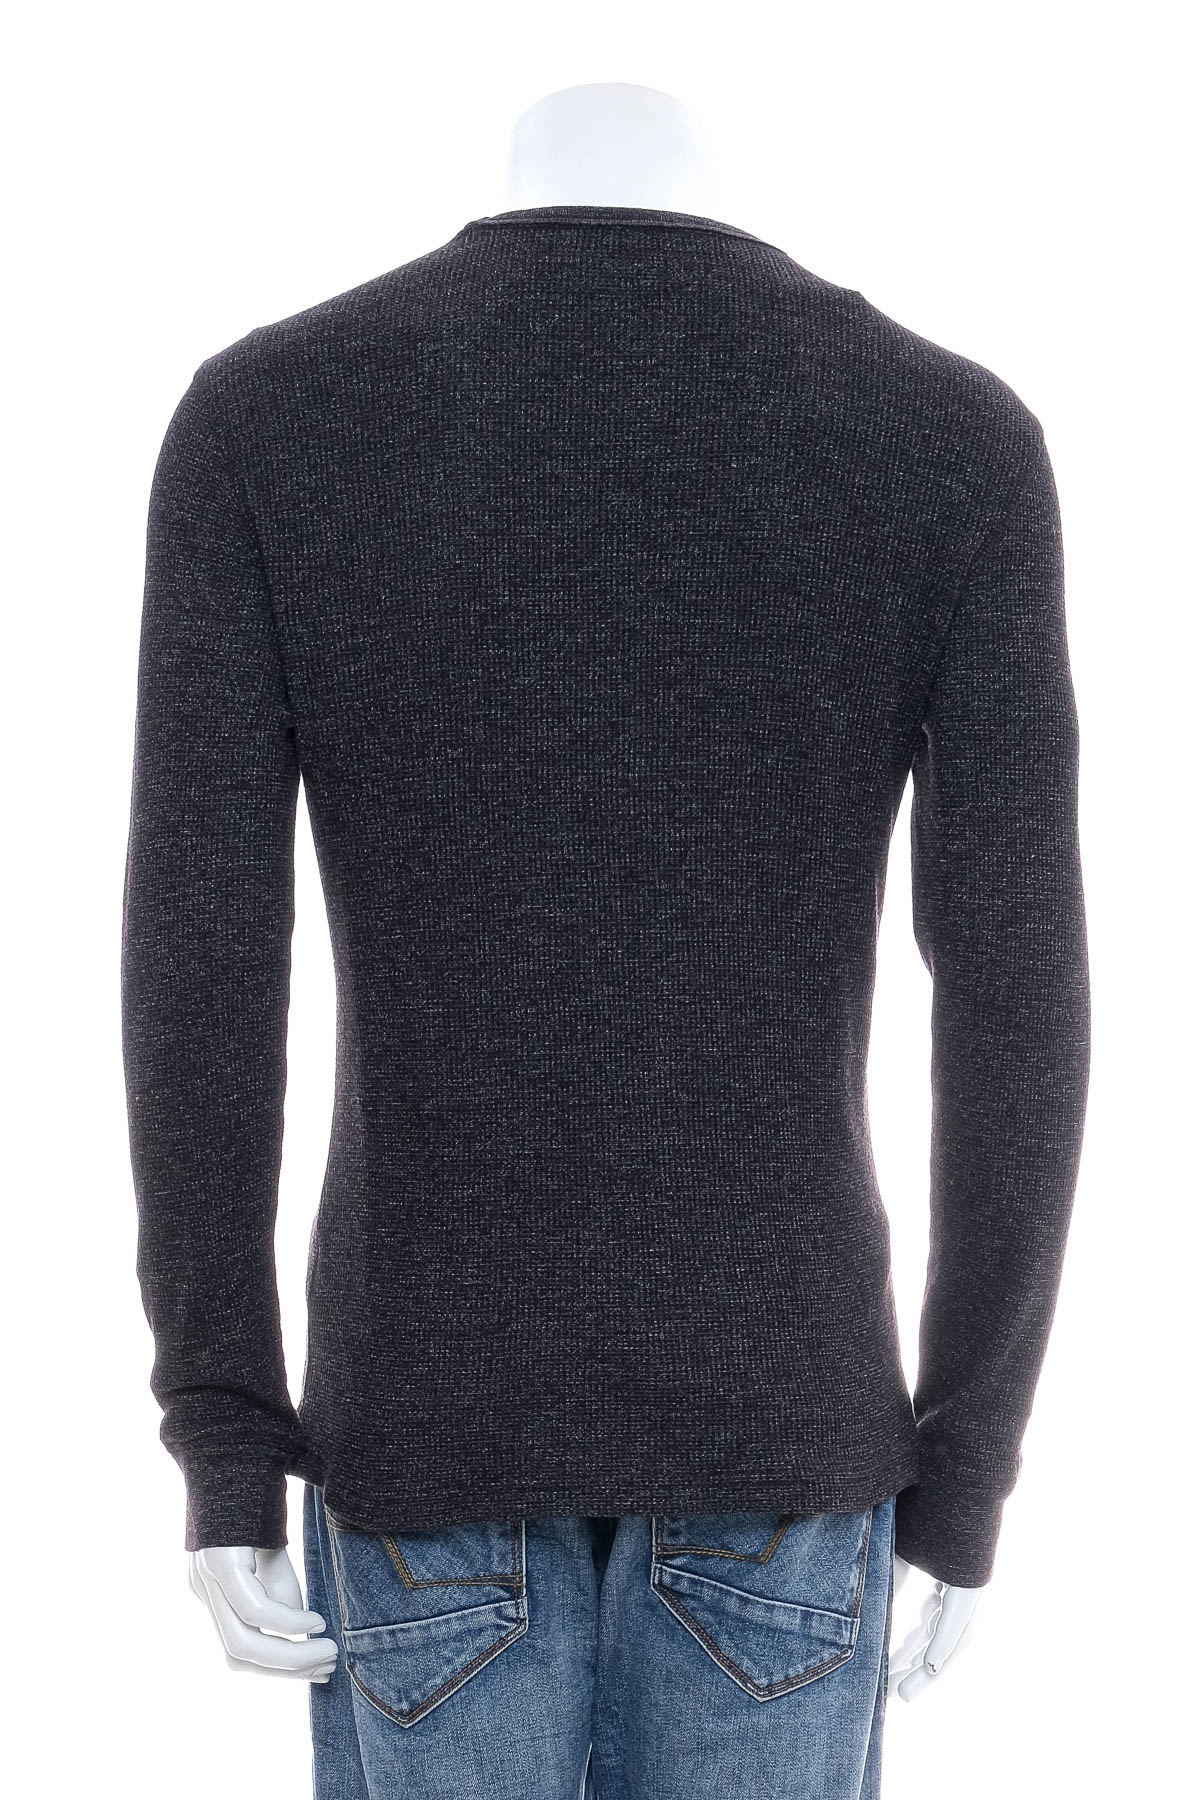 Men's sweater - H&M - 1